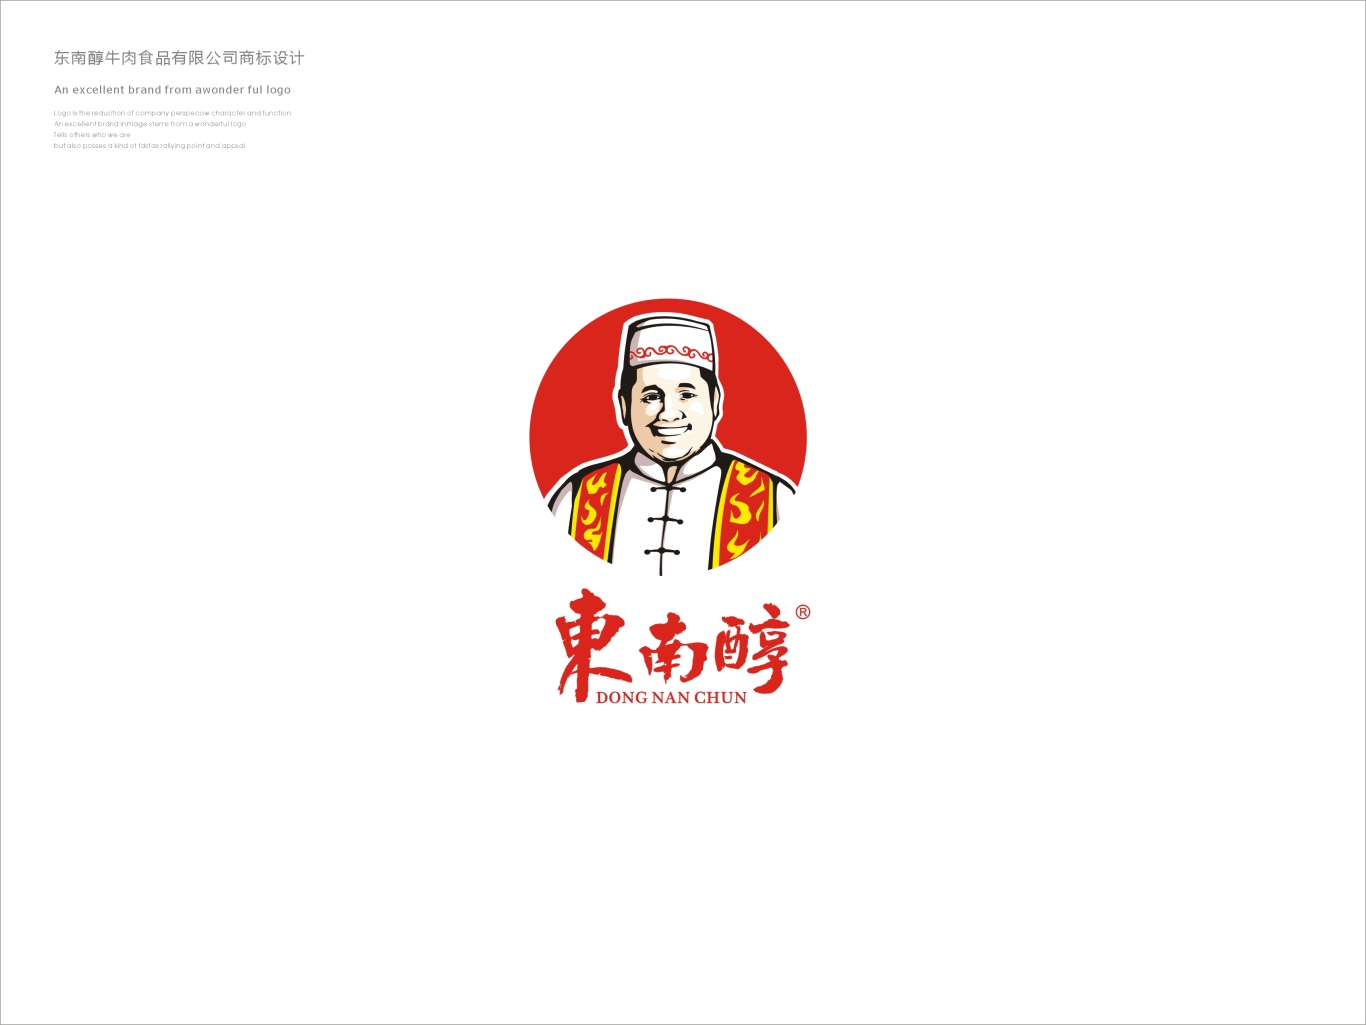 荆州市东南醇牛肉食品有限公司标志设计图2